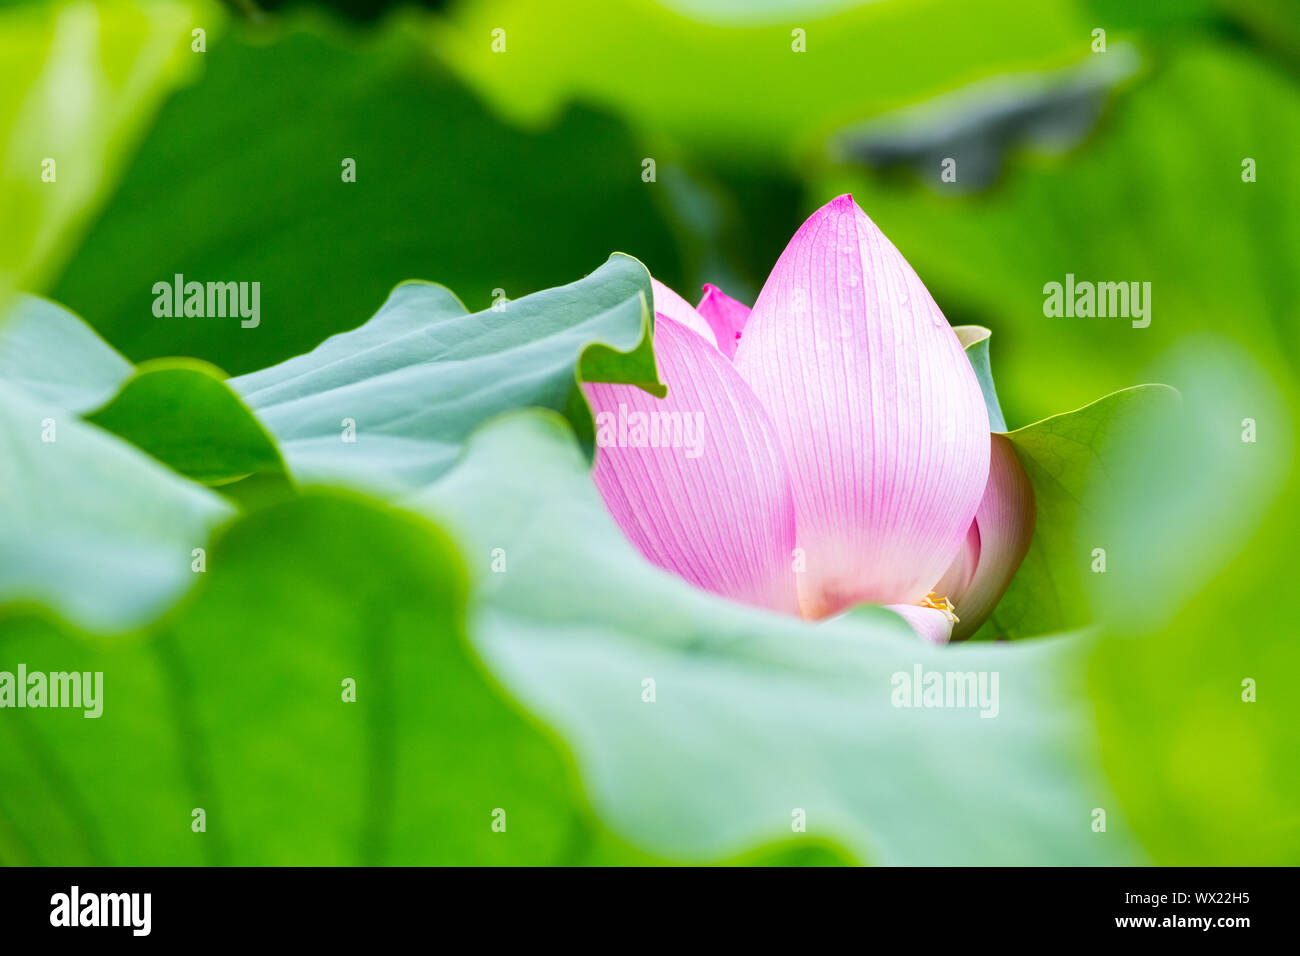 lotus flower closeup Stock Photo